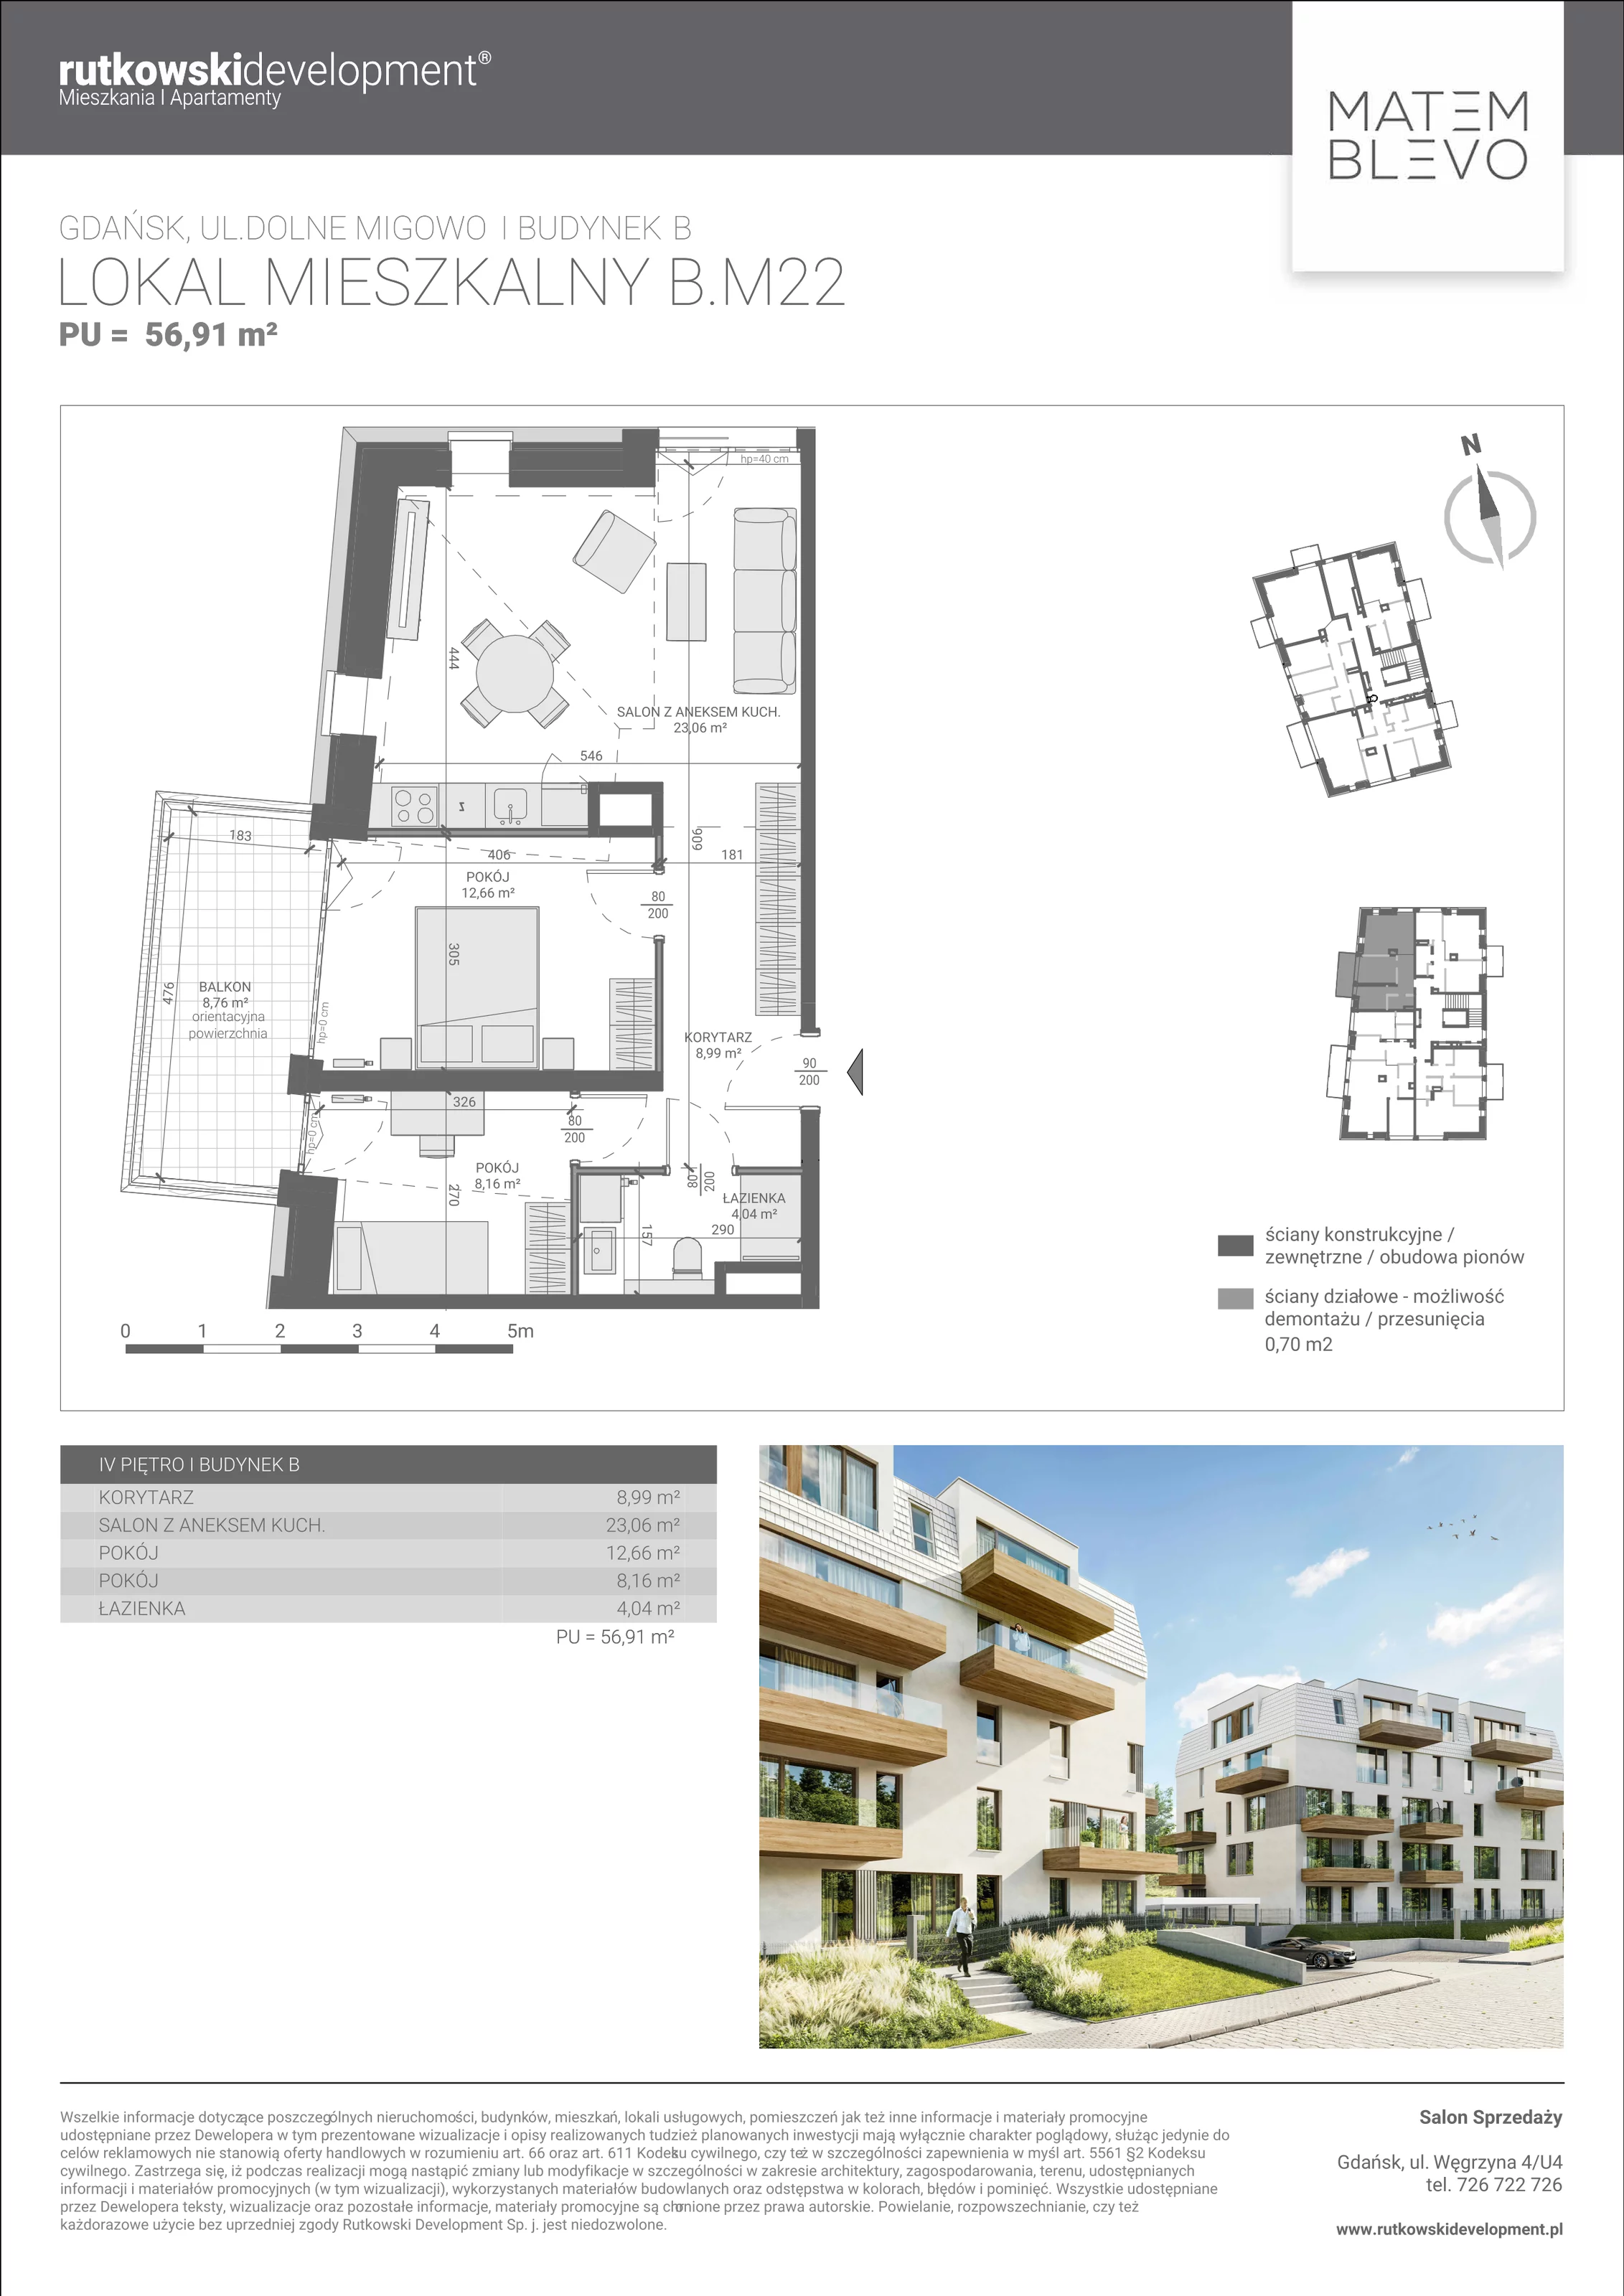 Mieszkanie 56,91 m², piętro 4, oferta nr B.M22, Matemblevo, Gdańsk, Brętowo, ul. Dolne Migowo 23 D